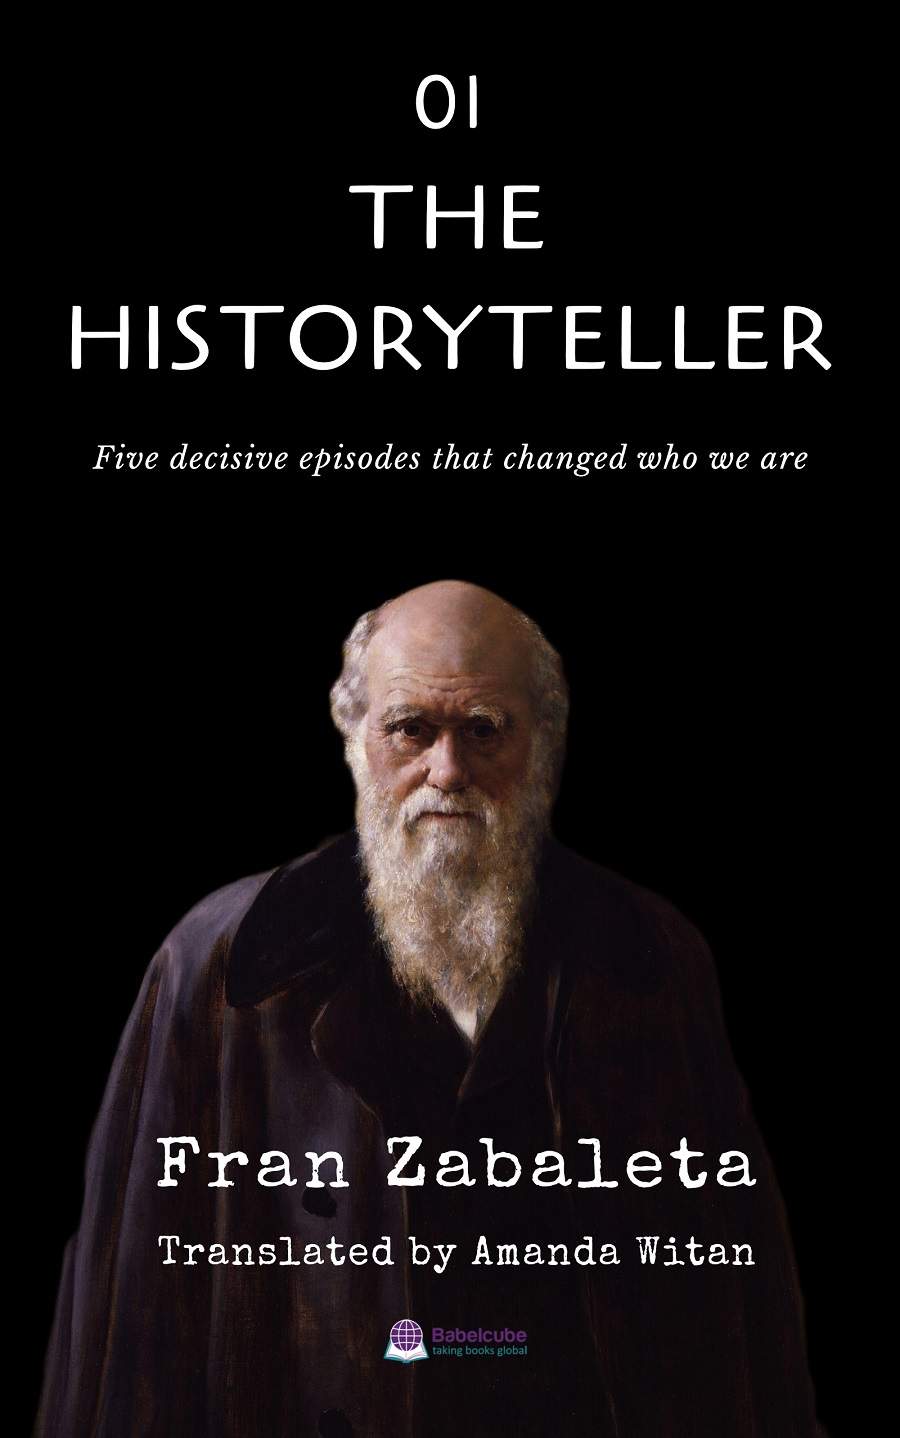 The Historyteller 01 Fran Zabaleta 900 